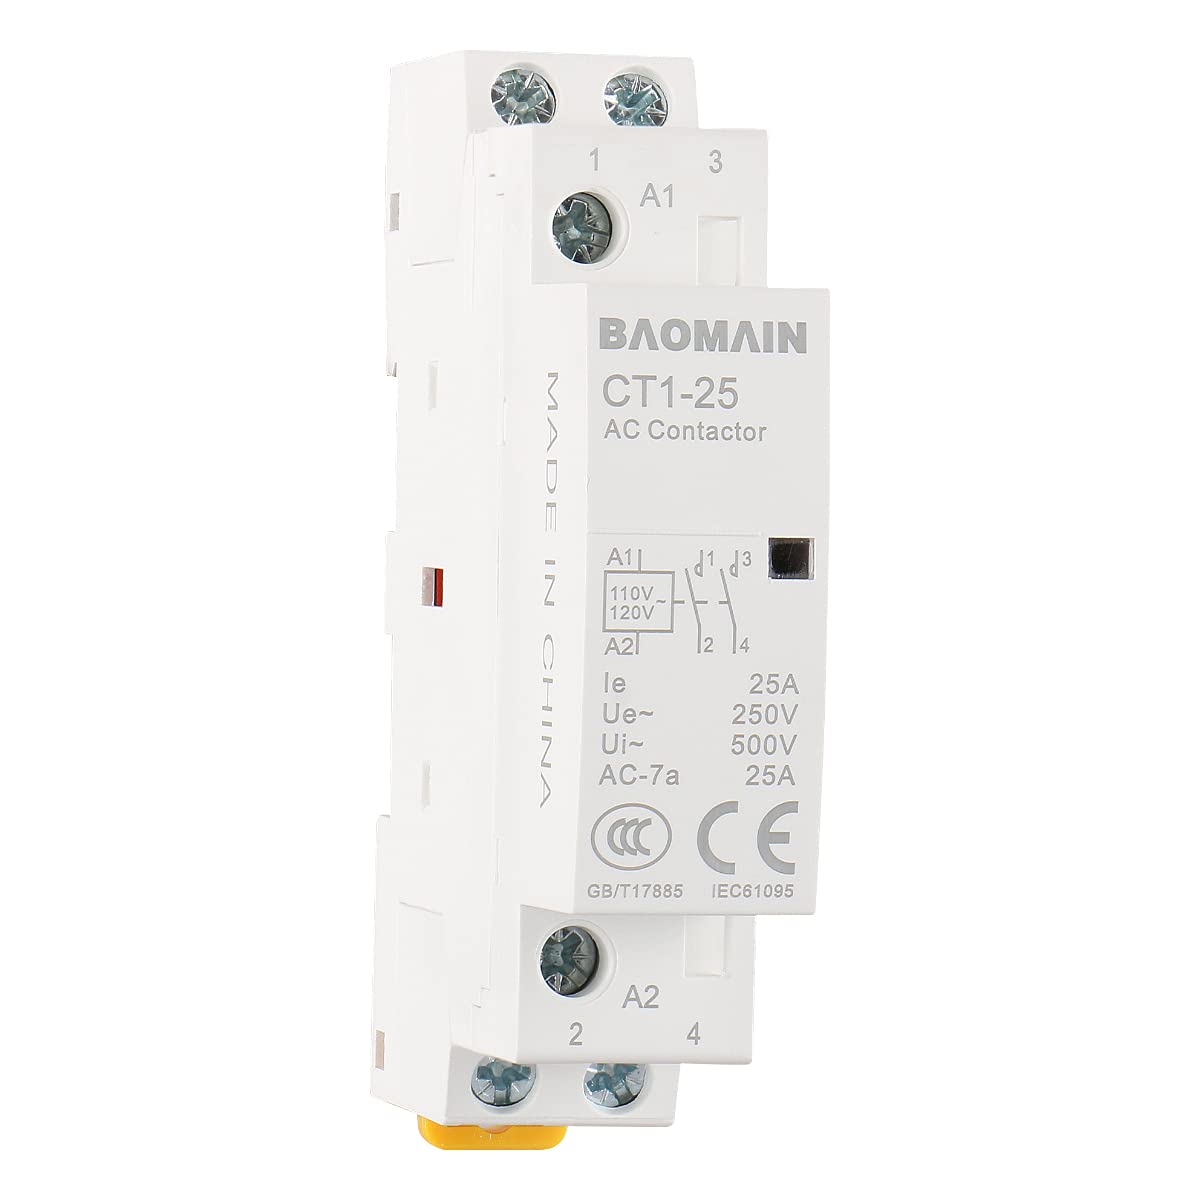 AC Contactor CT1-25 120V Coil 25A 2 Pole Normally Open – BAOMAIN